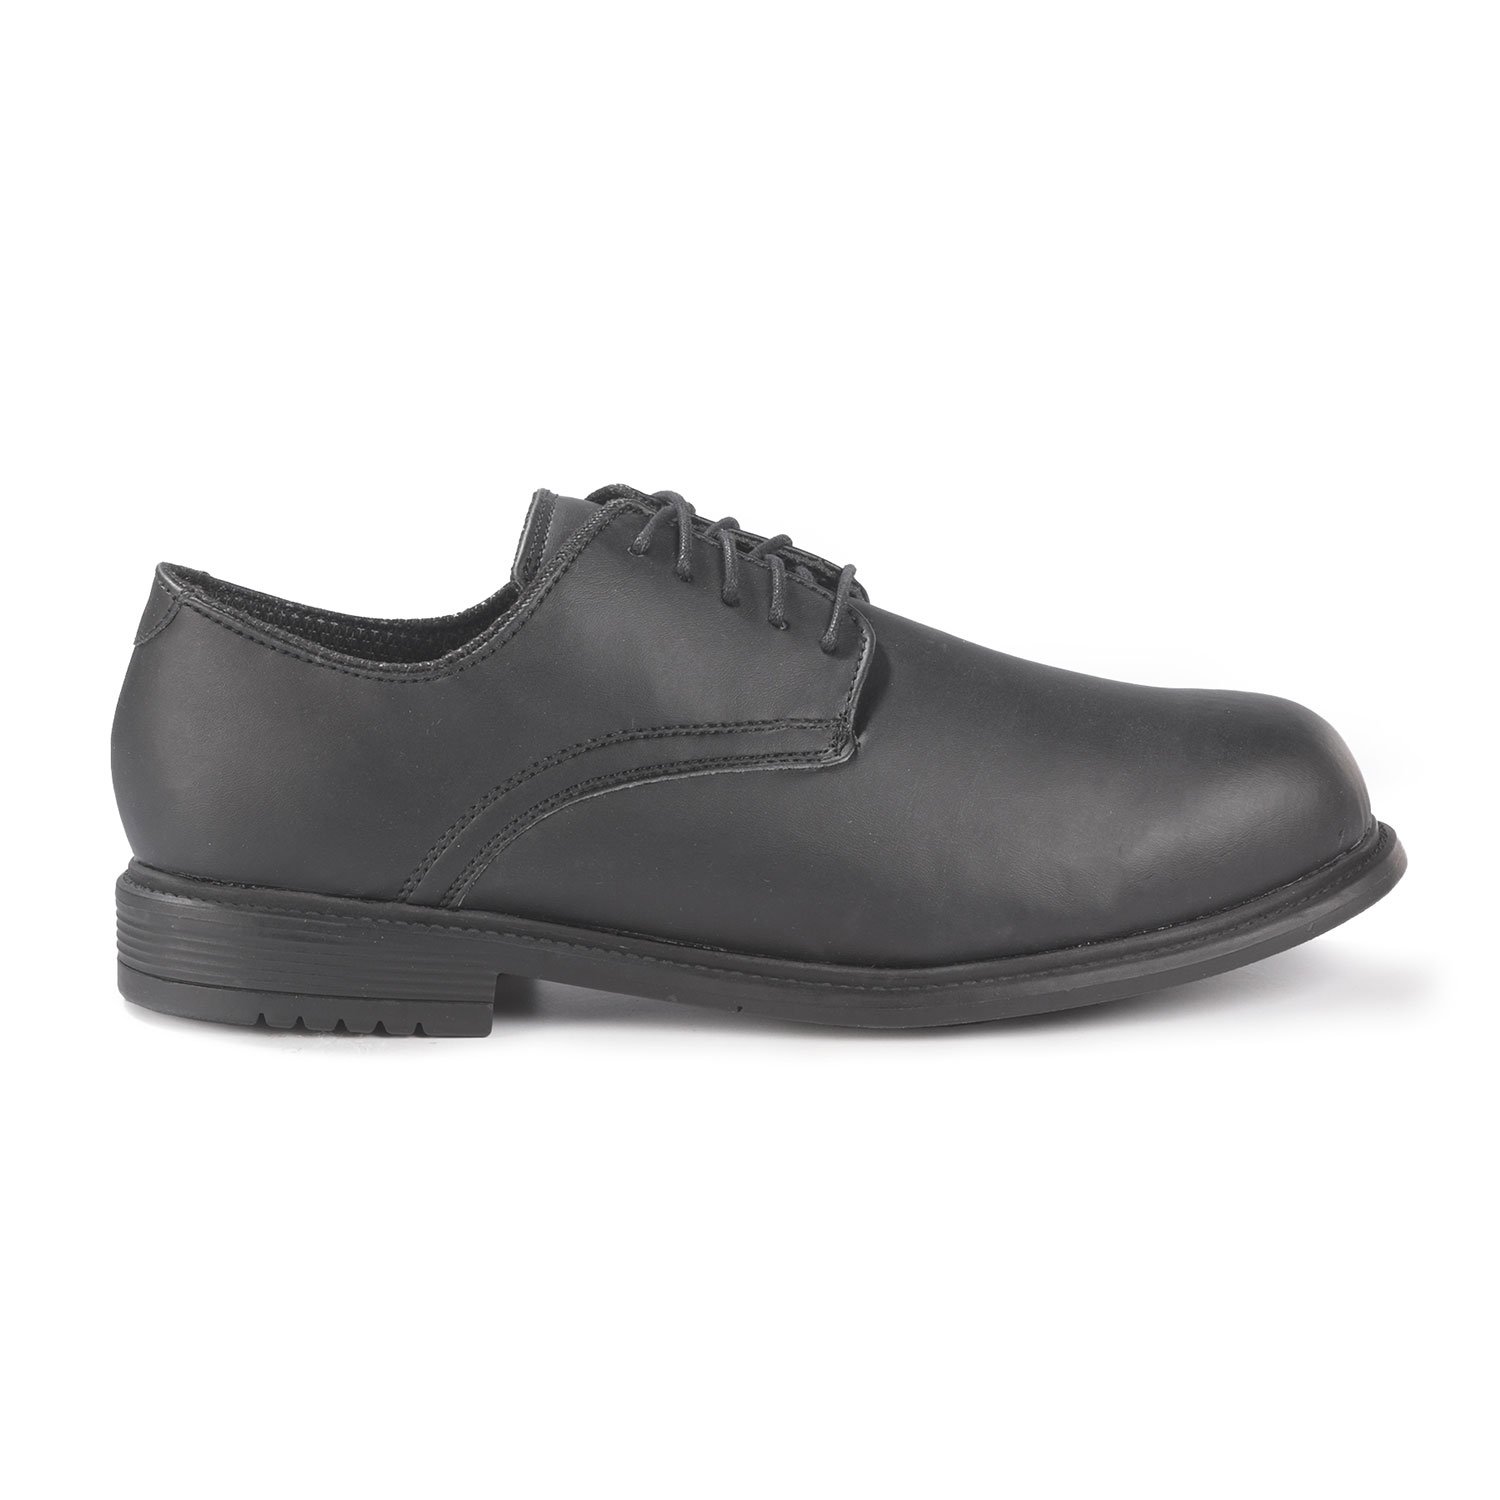 LawPro Men's Oxford Shoe | Men's Work Shoes | Duty Shoes